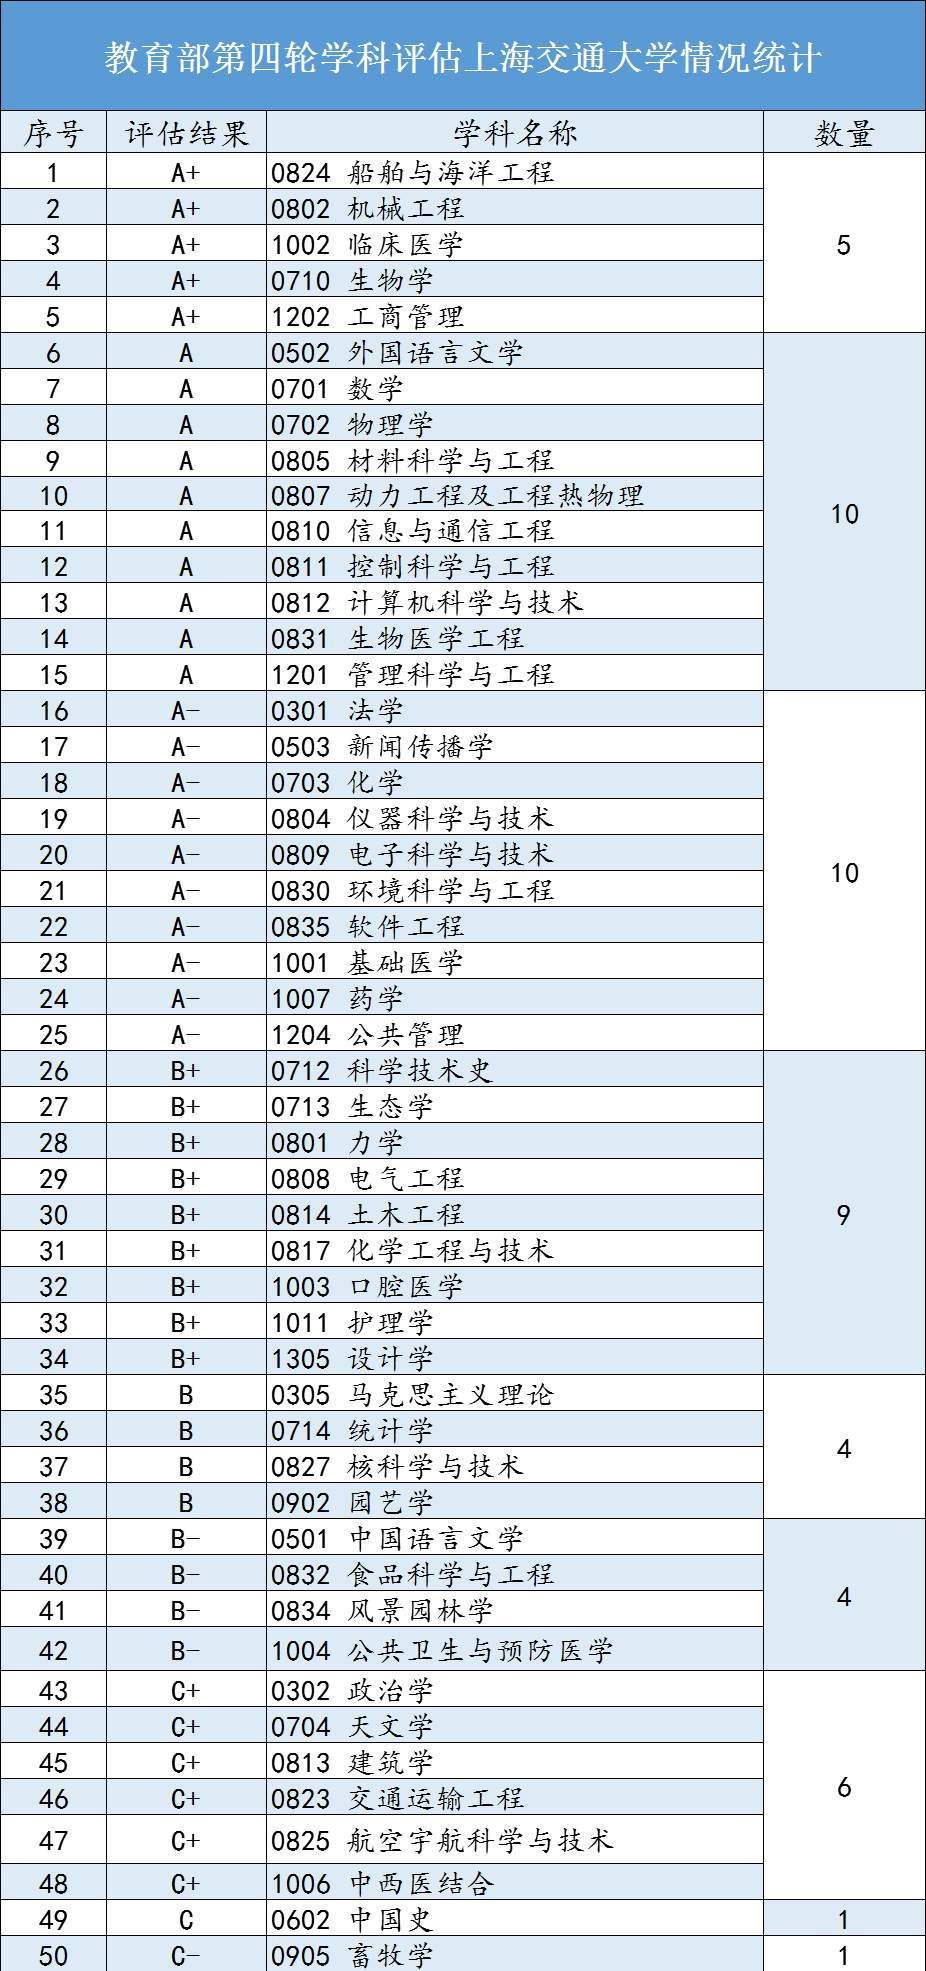 第四轮学科评估:上海交通大学VS复旦大学,到底